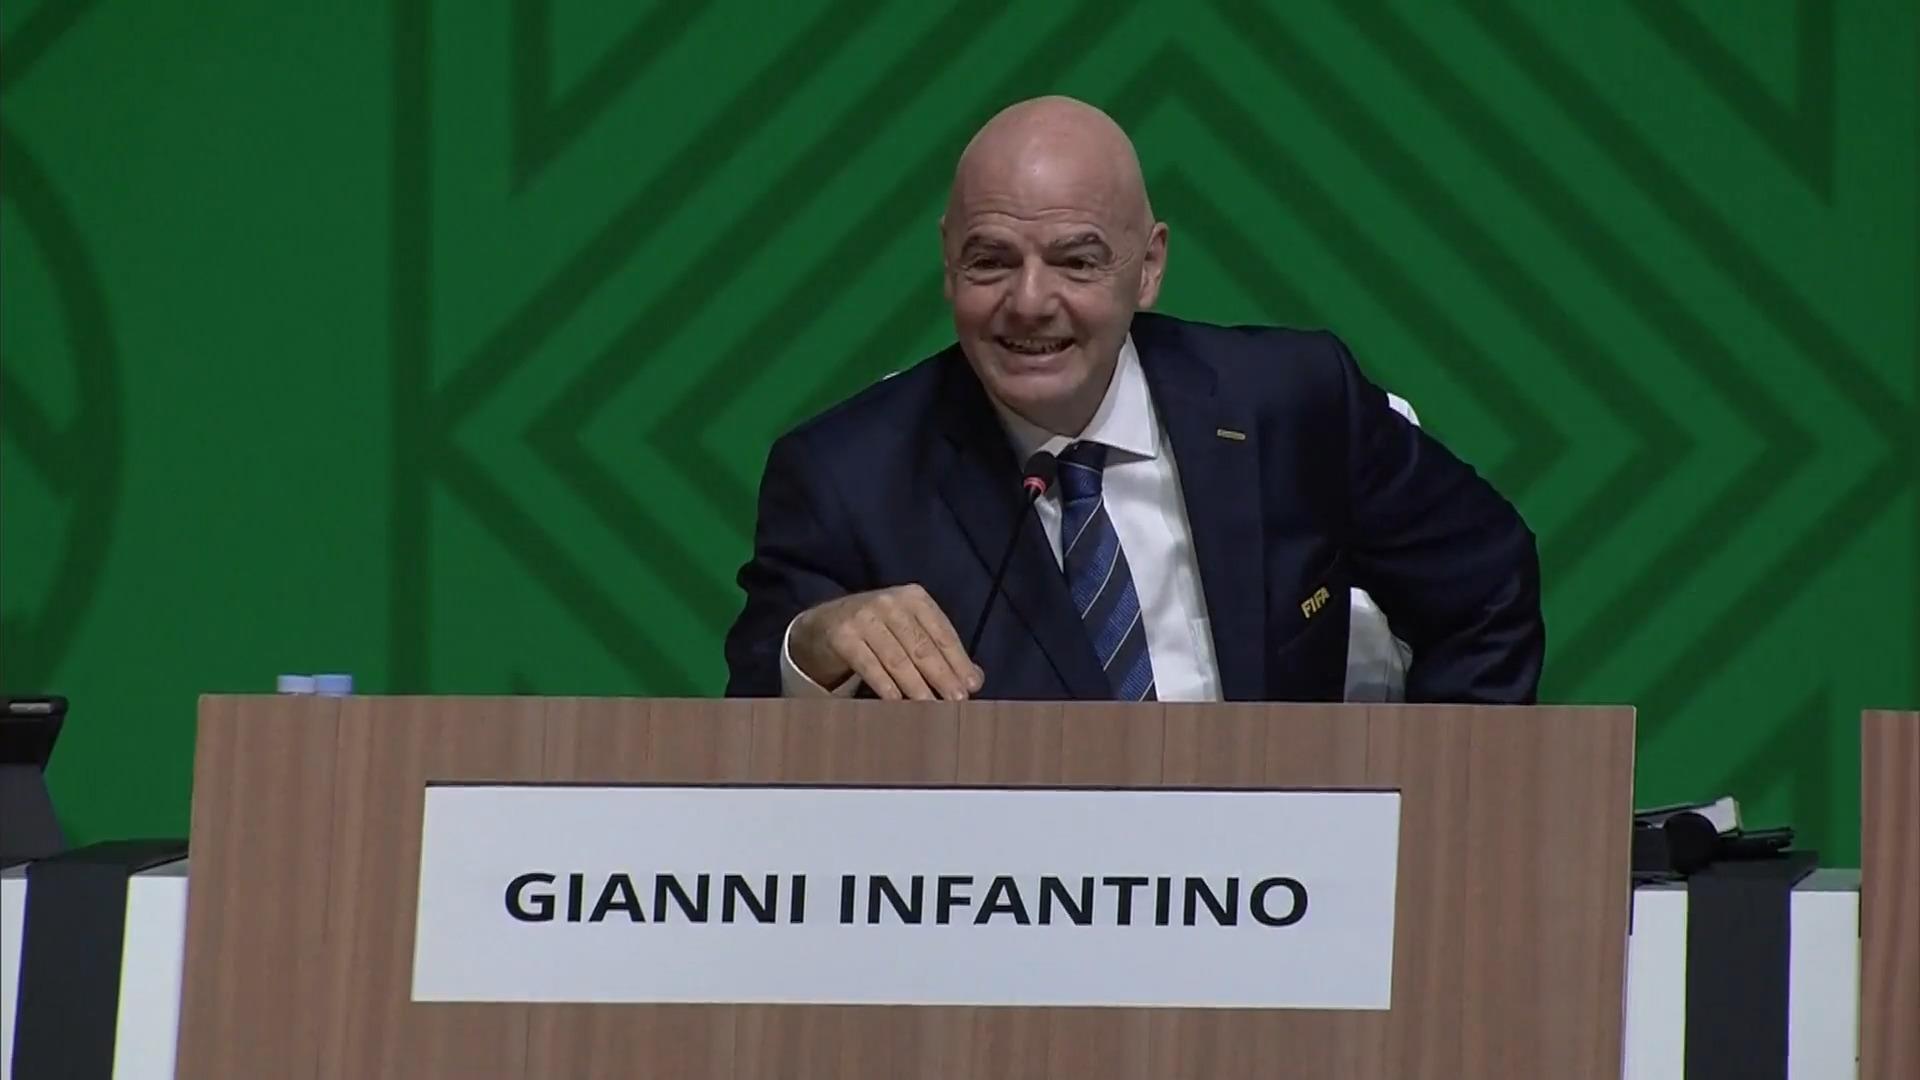 FIFA-Präsident Infantino liebt alle - auch die Kritiker Auch ohne DFB-Unterstützung erneut gewählt